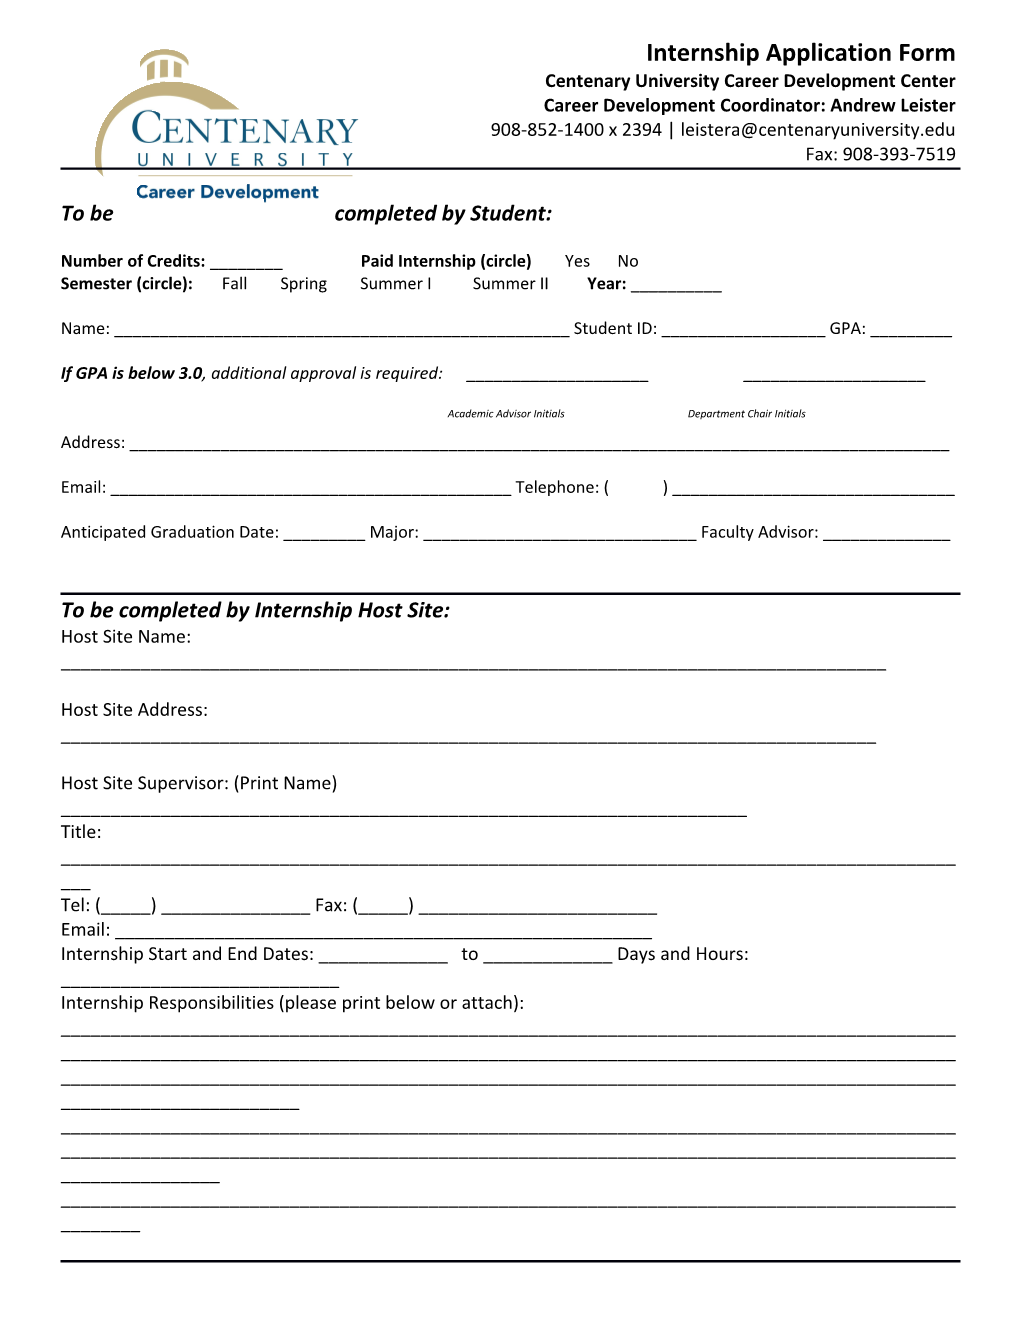 Internship Application Form s1